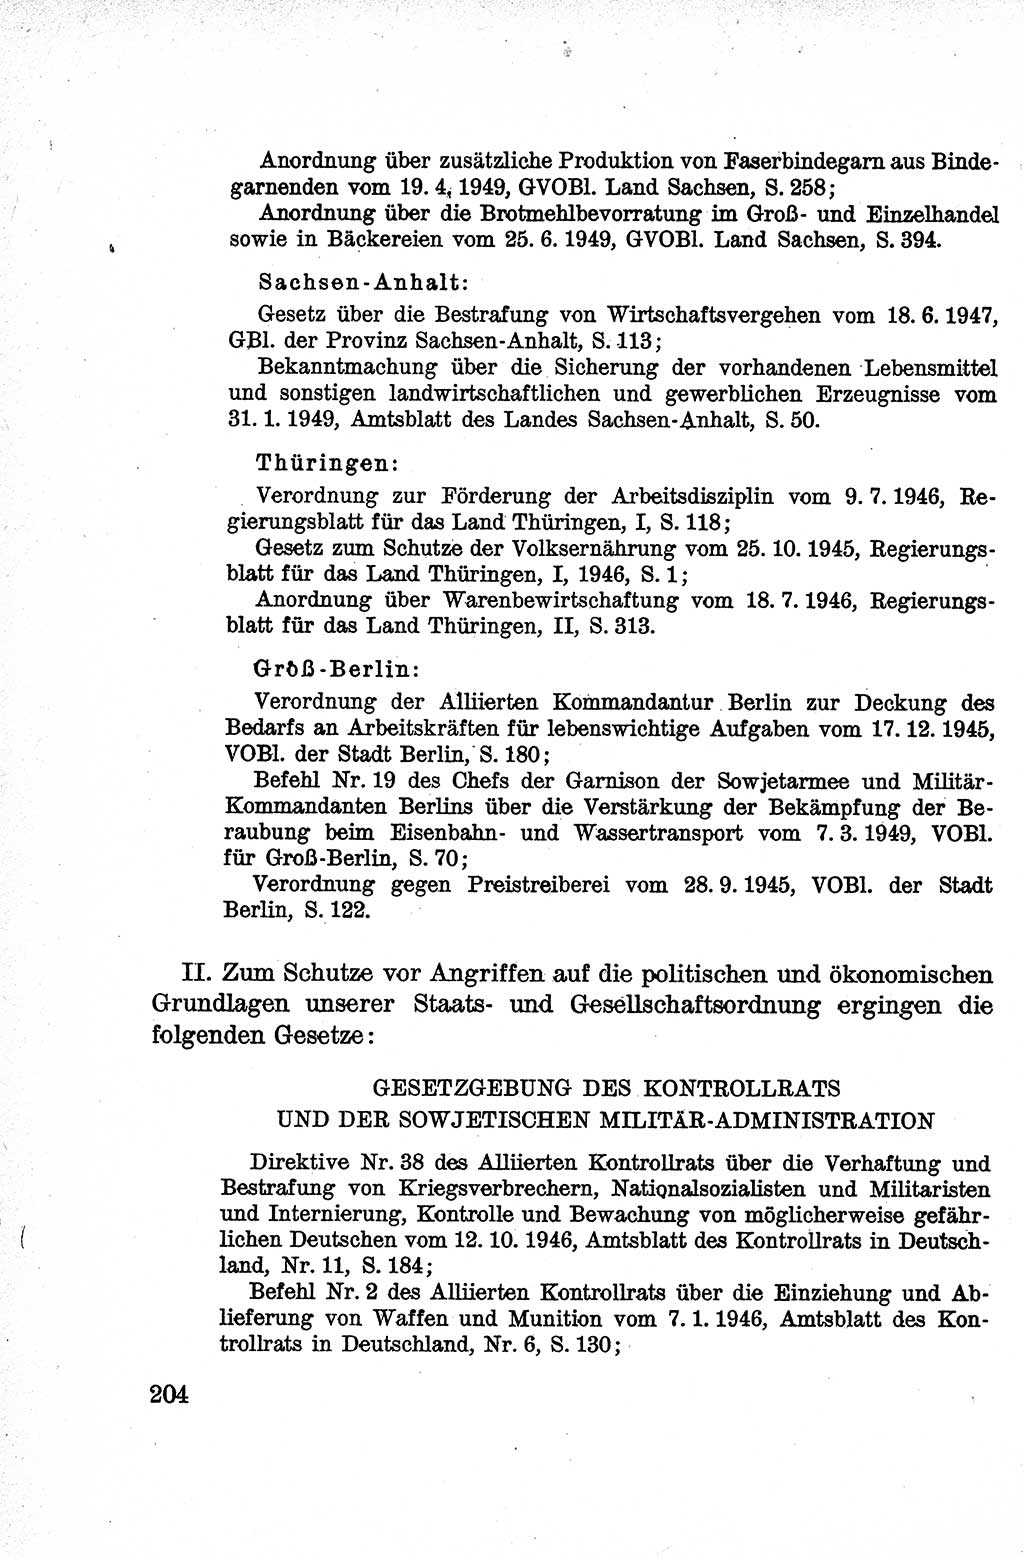 Lehrbuch des Strafrechts der Deutschen Demokratischen Republik (DDR), Allgemeiner Teil 1959, Seite 204 (Lb. Strafr. DDR AT 1959, S. 204)